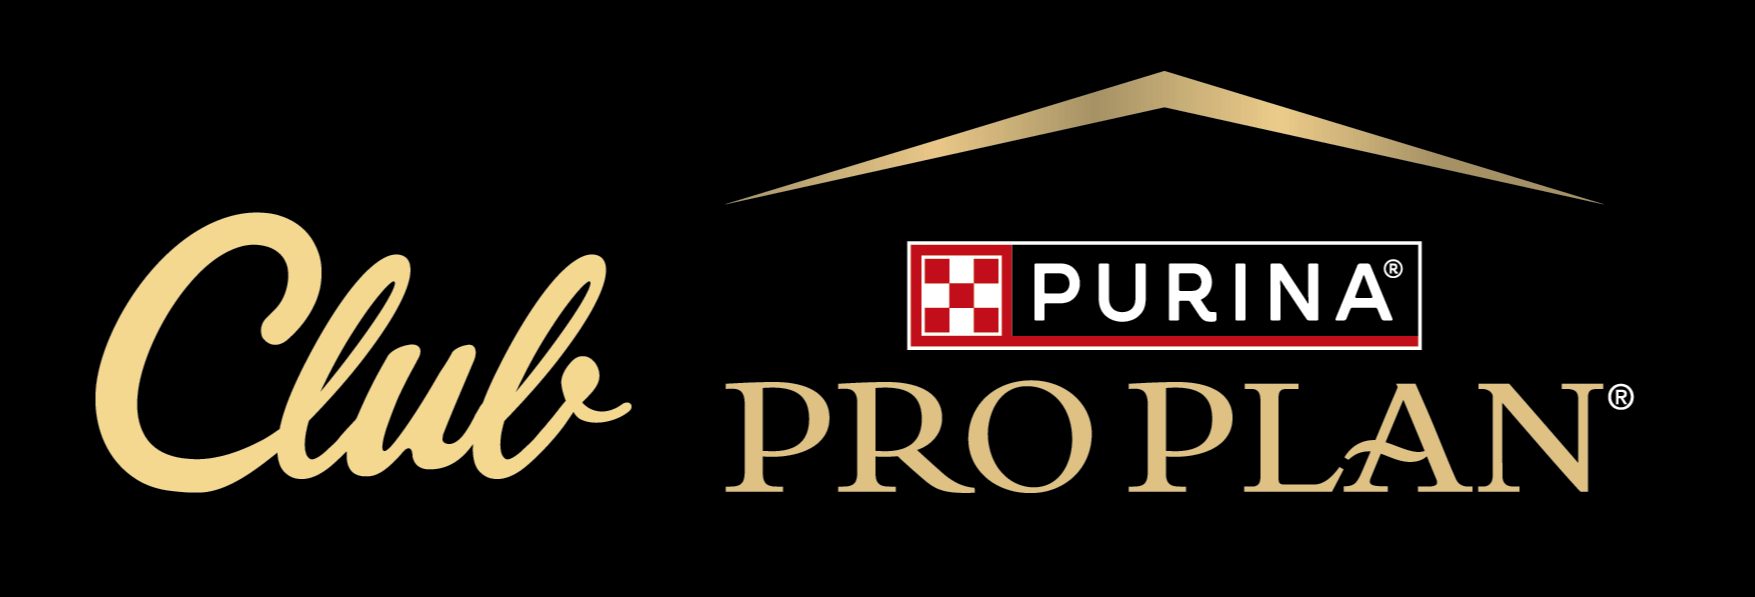 Pro Plan Club logo